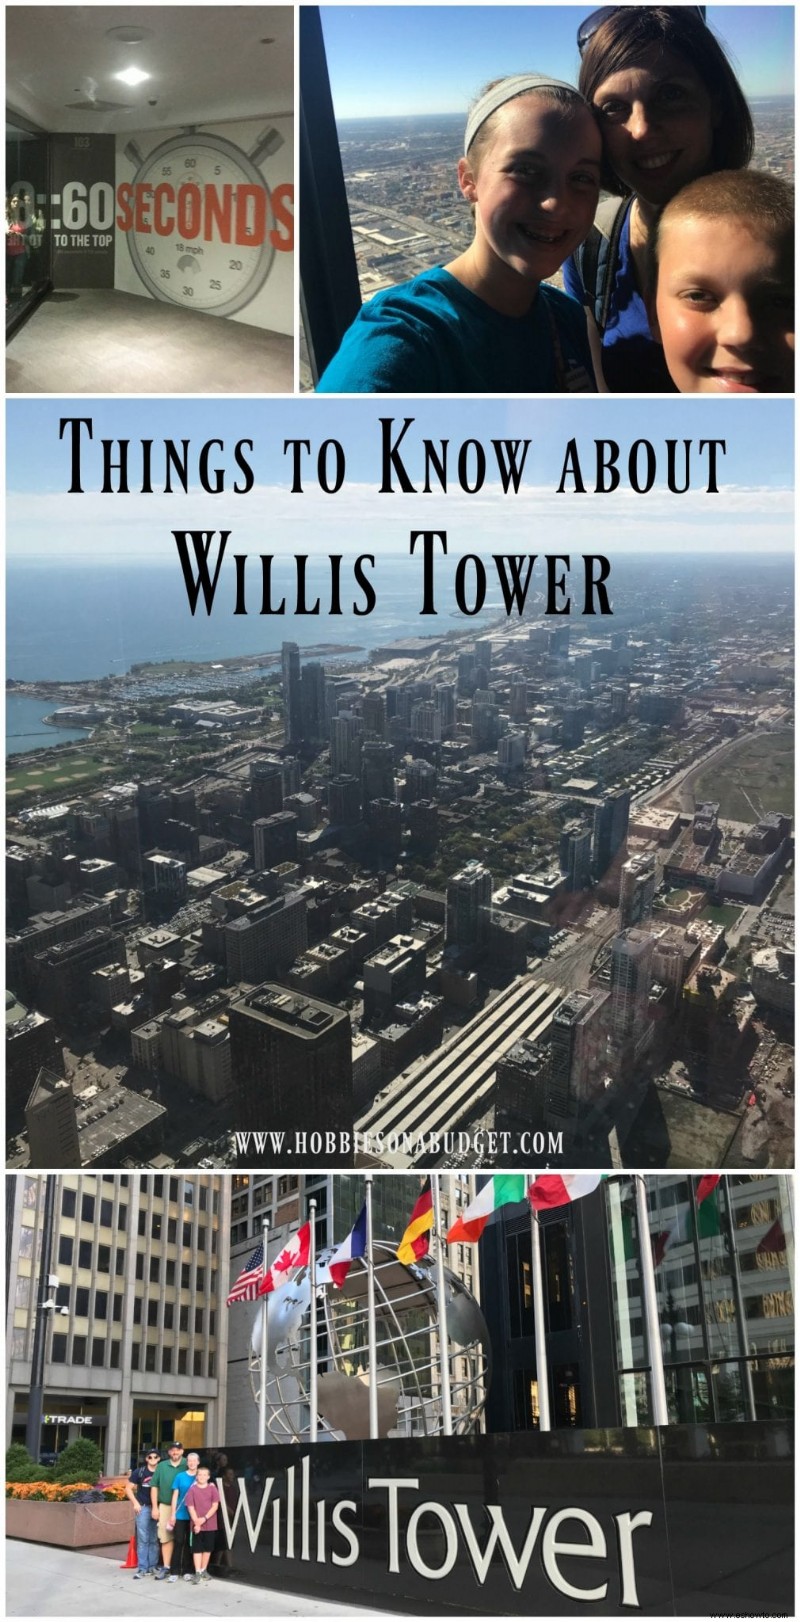 Cosas que debe saber sobre Willis Tower Skydeck